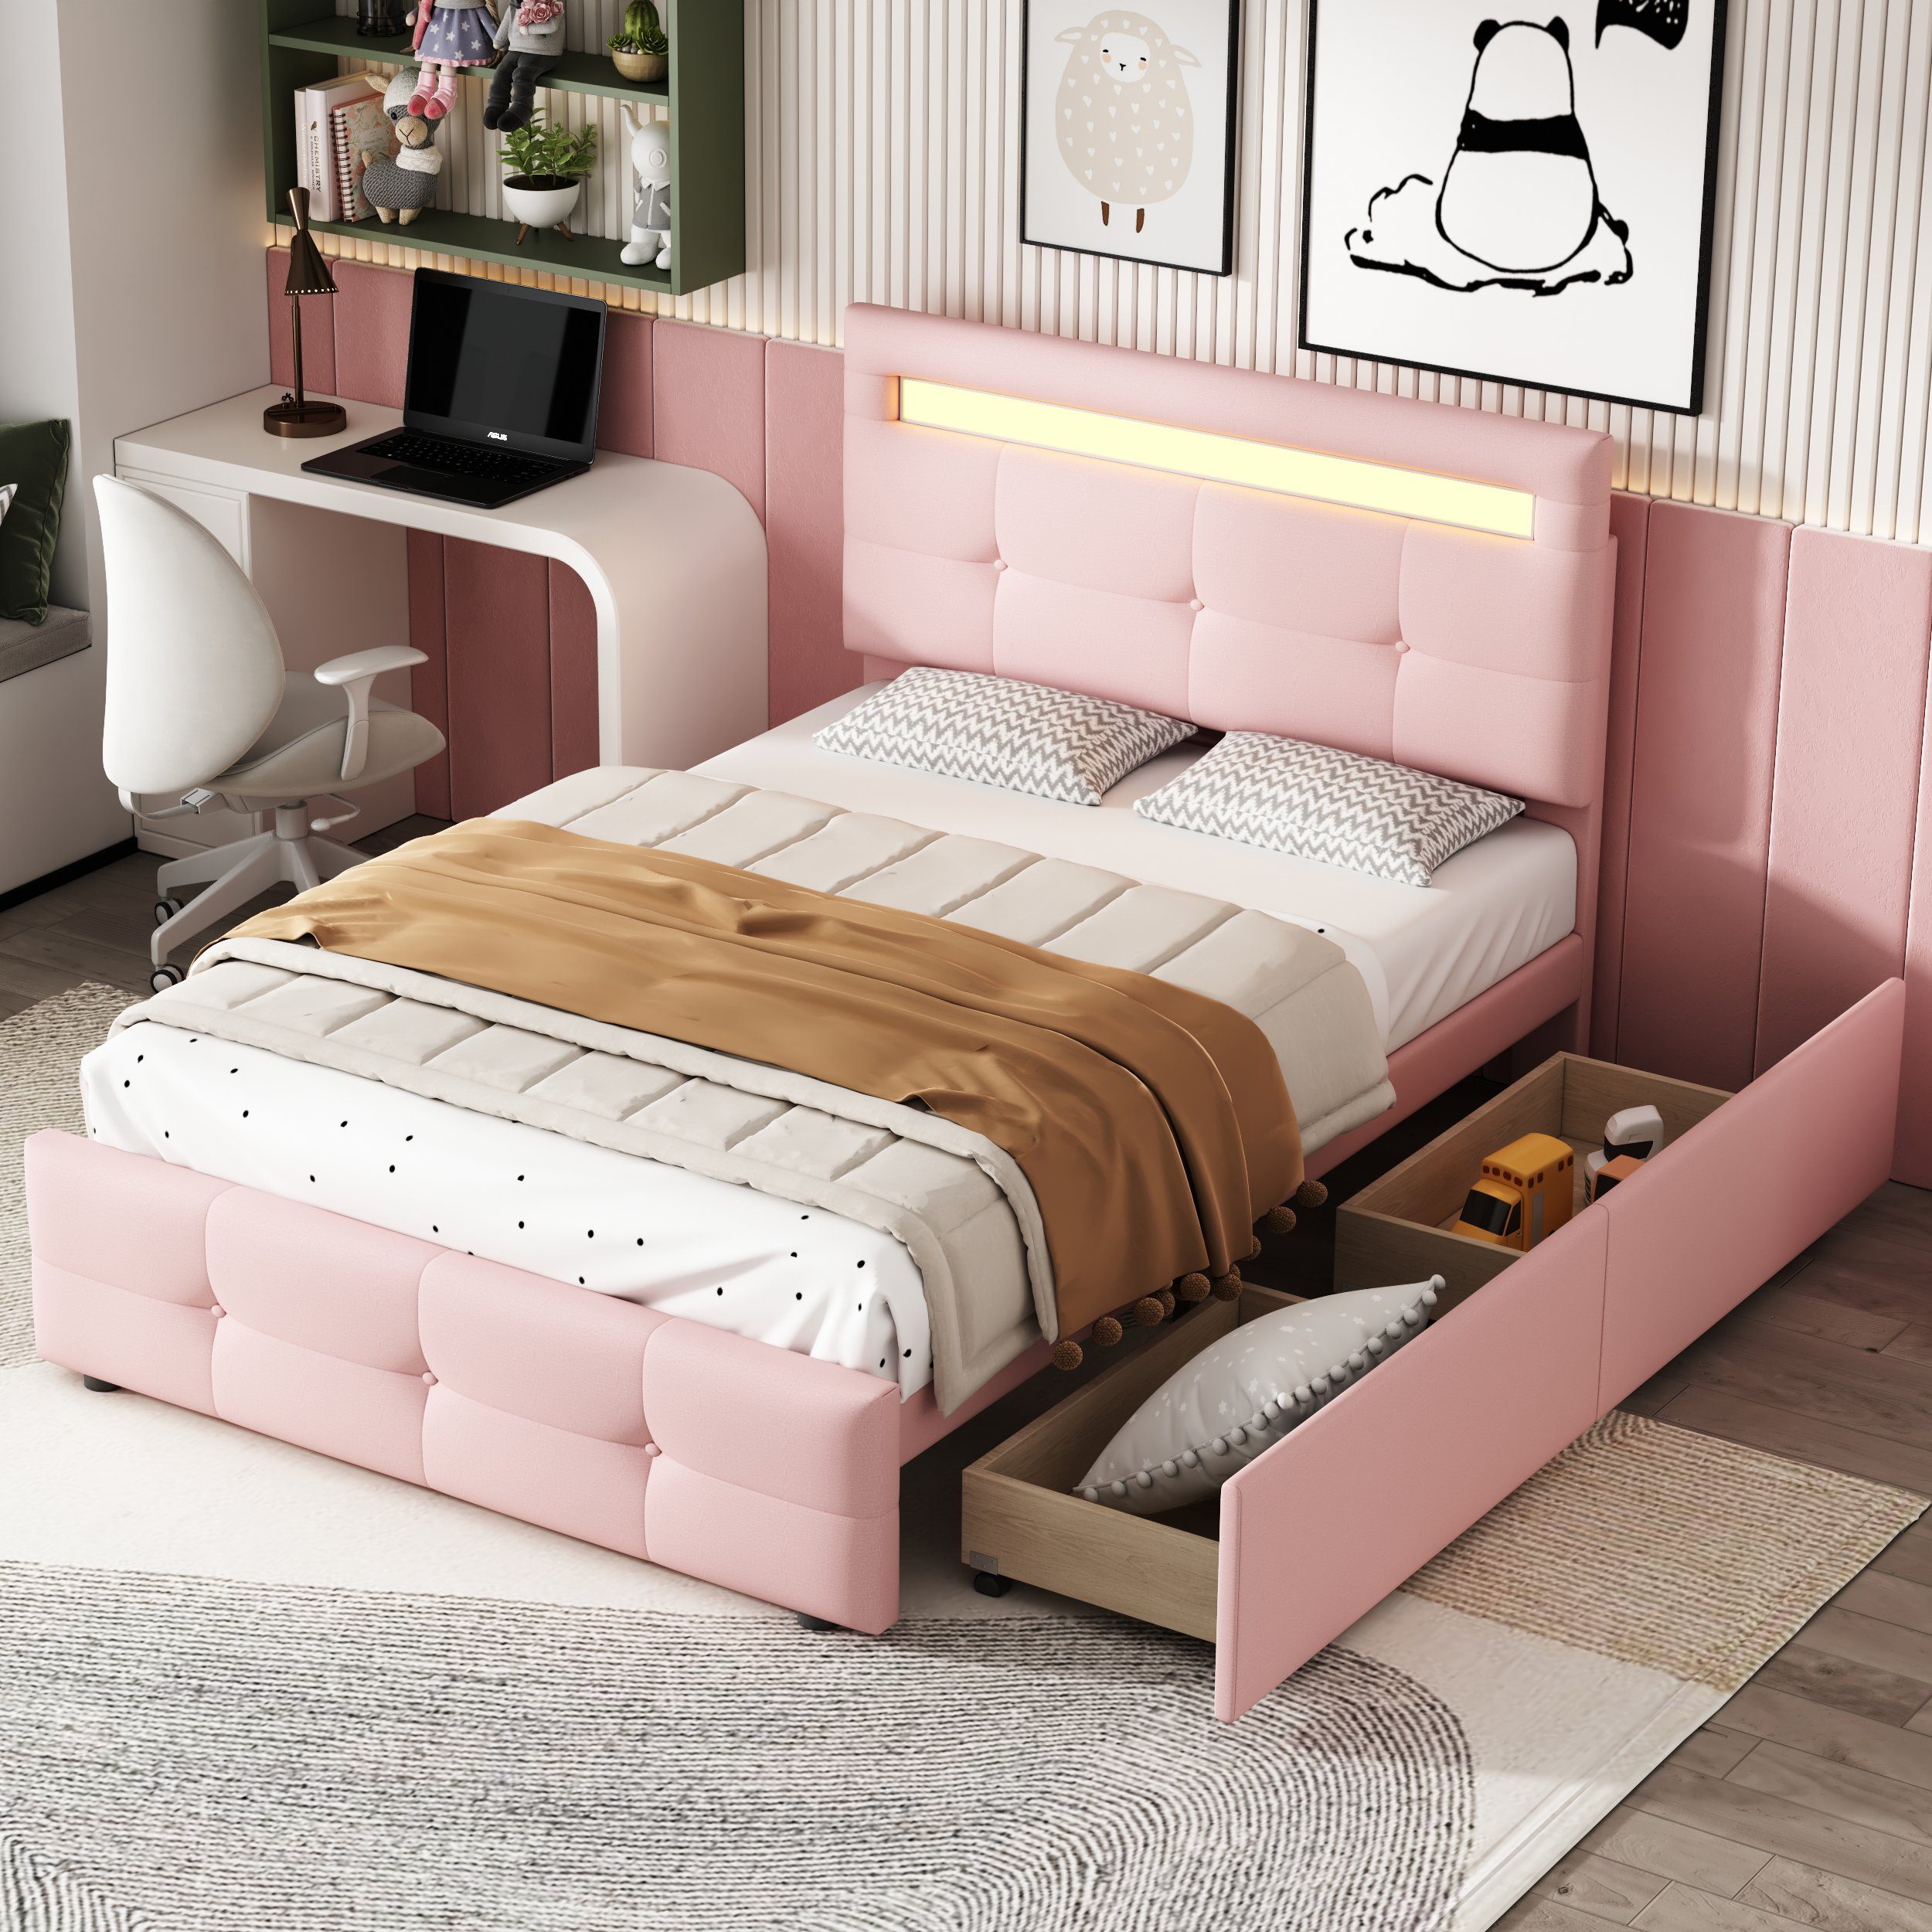 OKWISH Bett Kinderbett Jugendbett rosa (mit hautfreundlicher Matratze Gästebett 200x90cm, flach), LED-Leuchten, Polsterbett Leinenpolsterung 2 Schubladen, Ohne